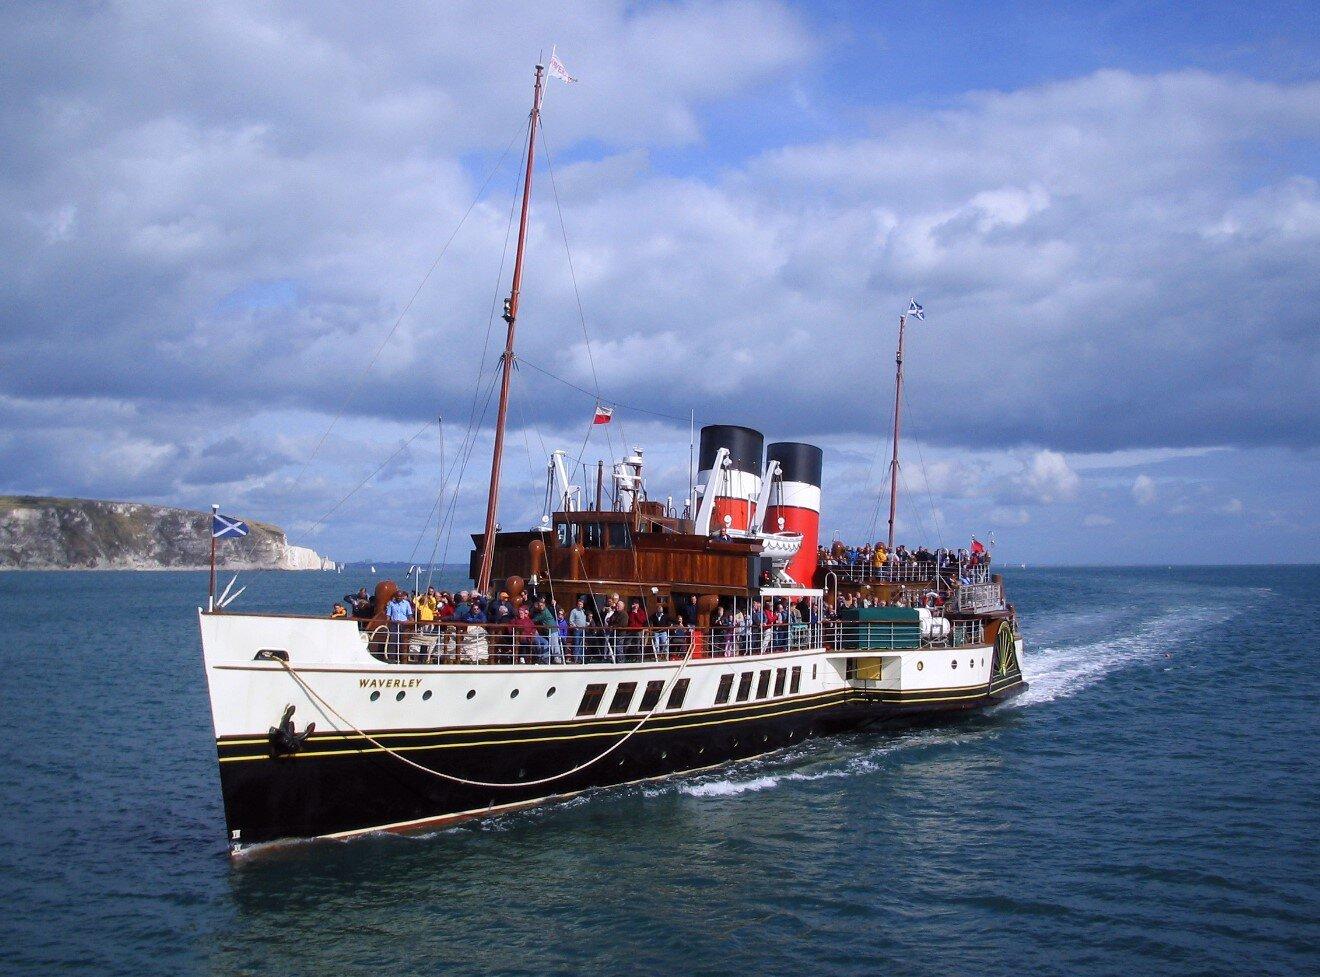 The Waverley - tàu hơi nước có mái chèo cuối cùng, một trong những biểu tượng của Scotland. (Nguồn ảnh: Internet)